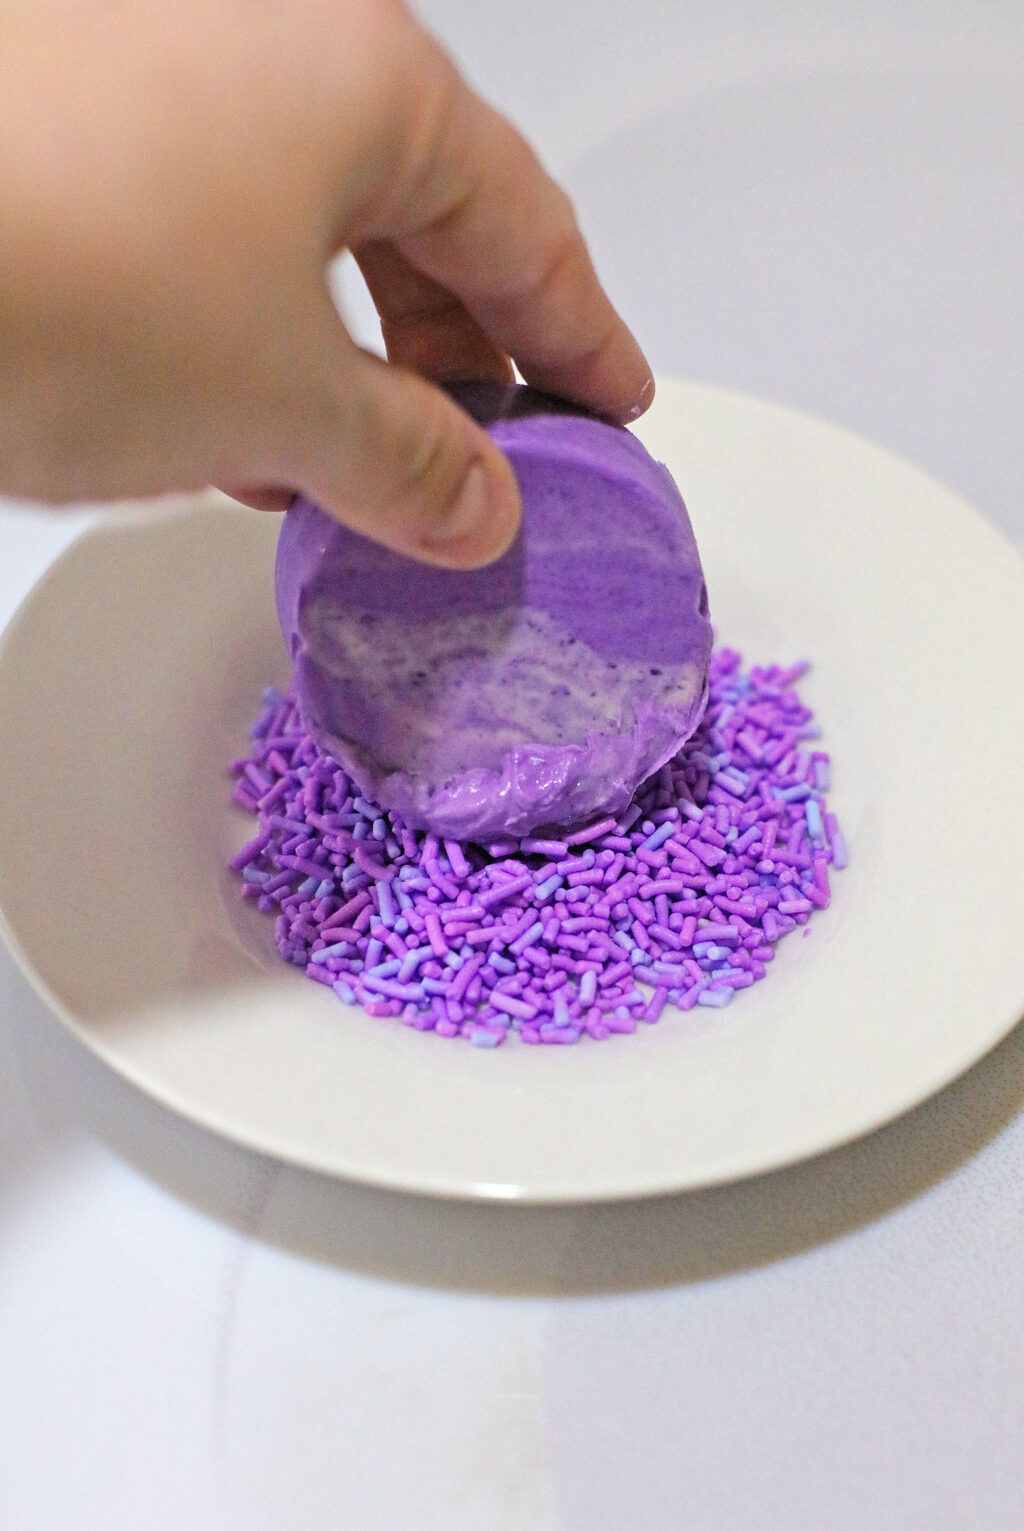 dipping purple oreo into purple sprinkles